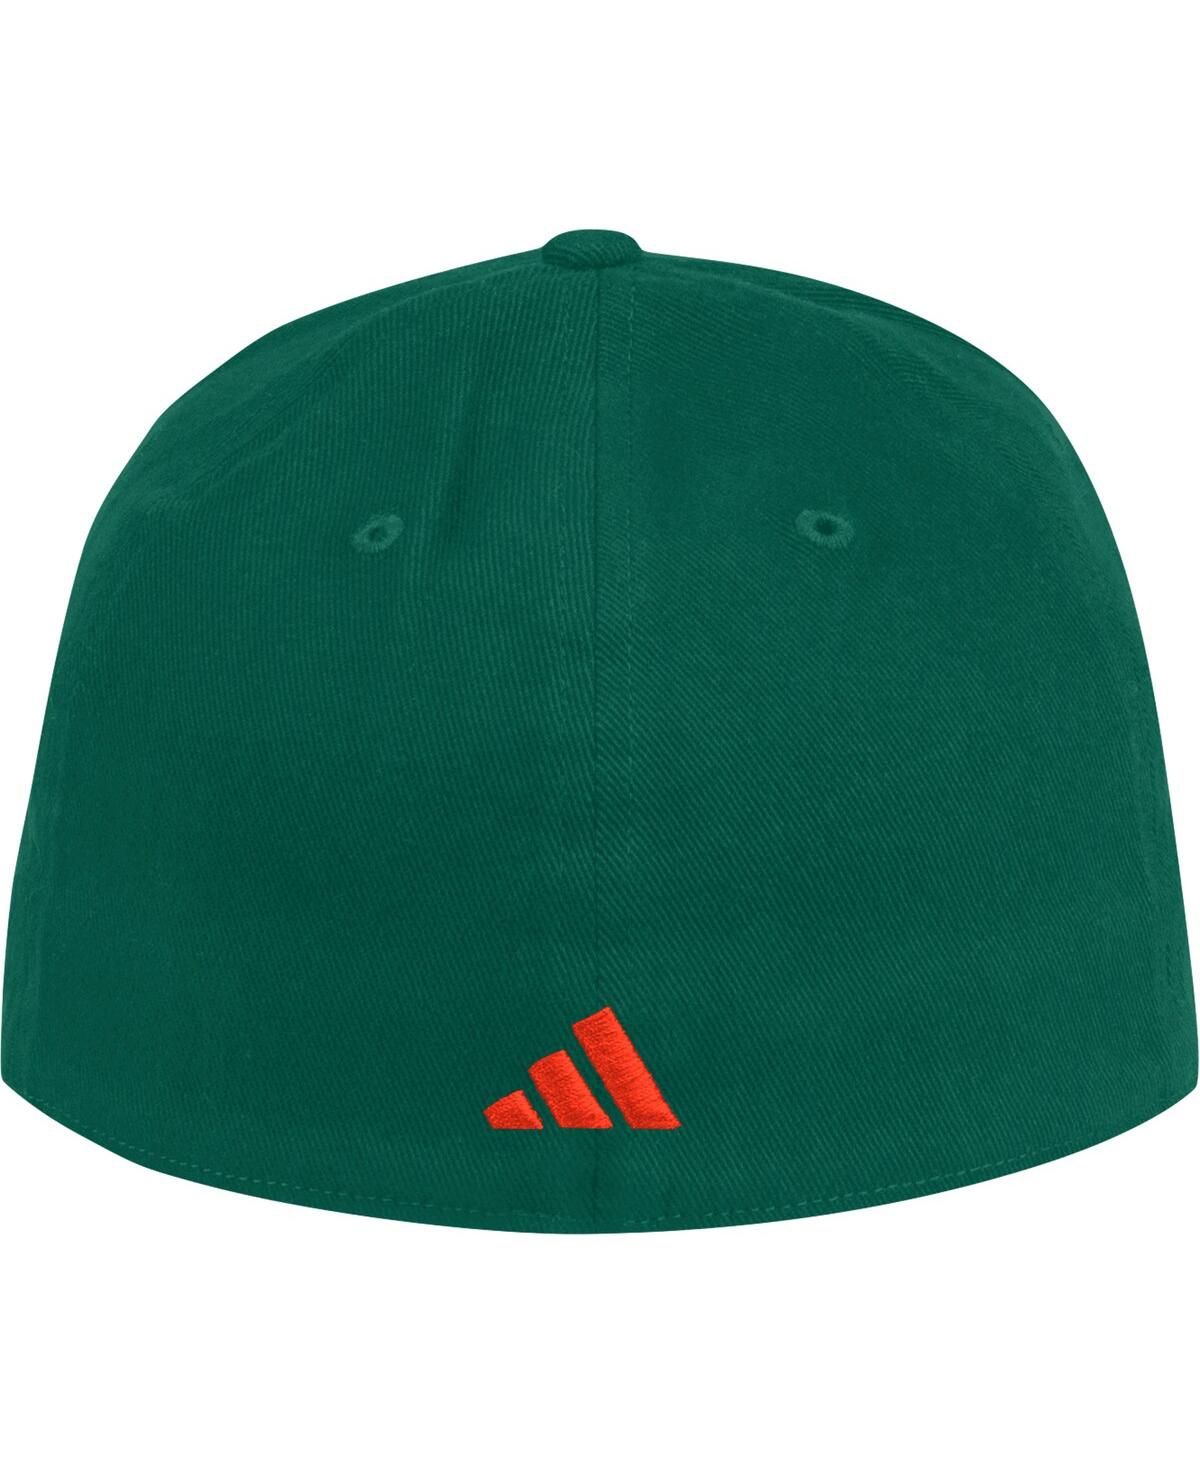 Shop Adidas Originals Men's Adidas Green Miami Hurricanes Vault Slouch Flex Hat